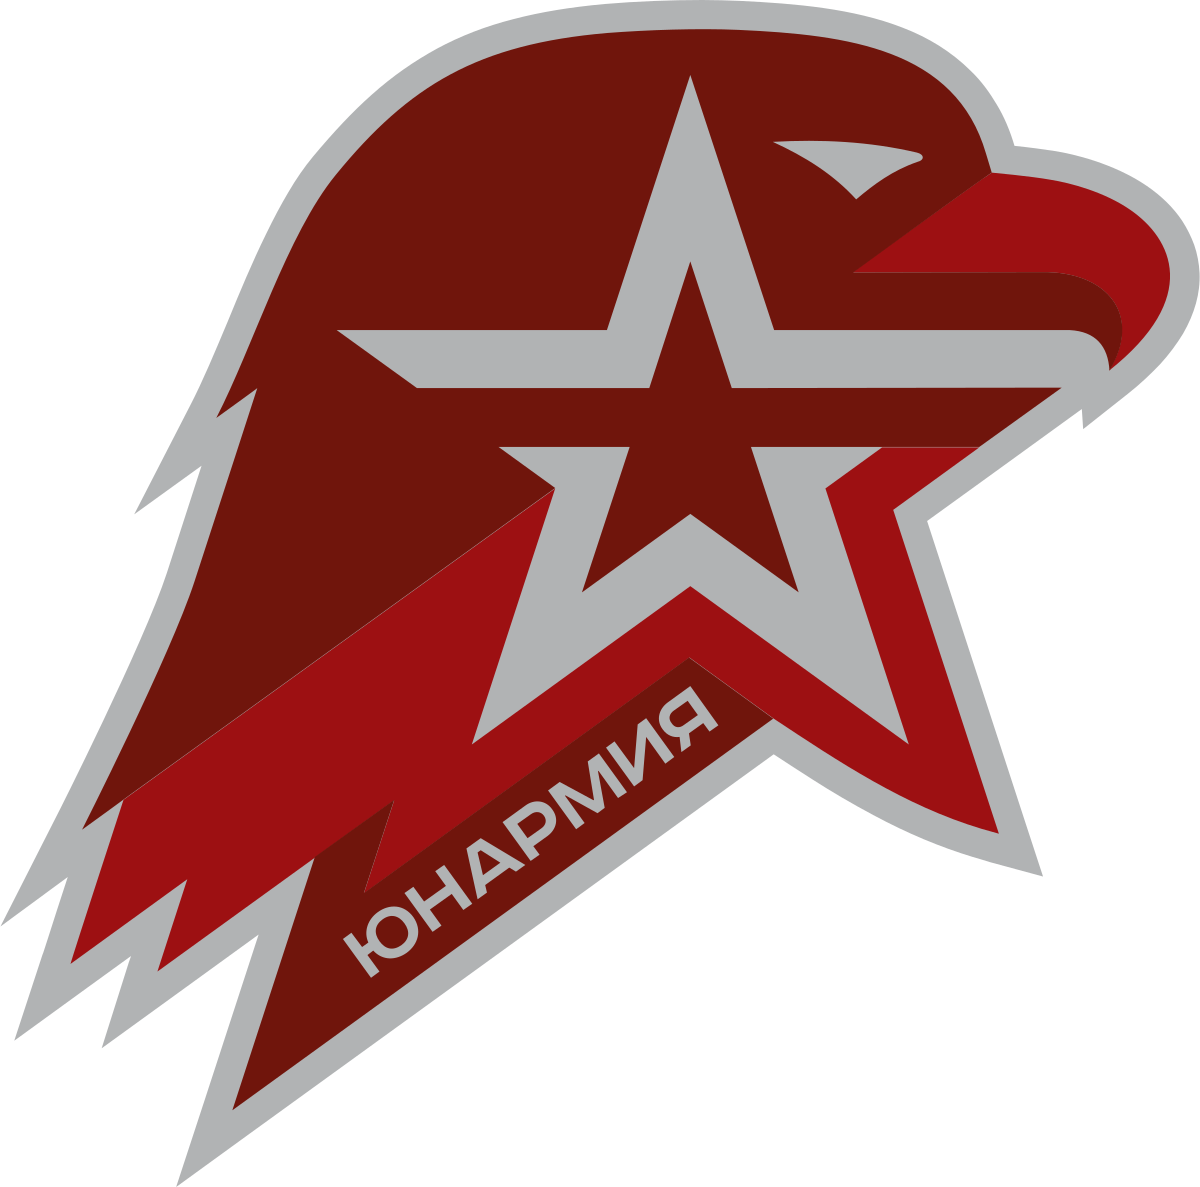 Юнармия — всероссийское детско-юношеское военно-патриотическое общественное движение, созданное в январе и зарегистрировано 29 июля 2016 года